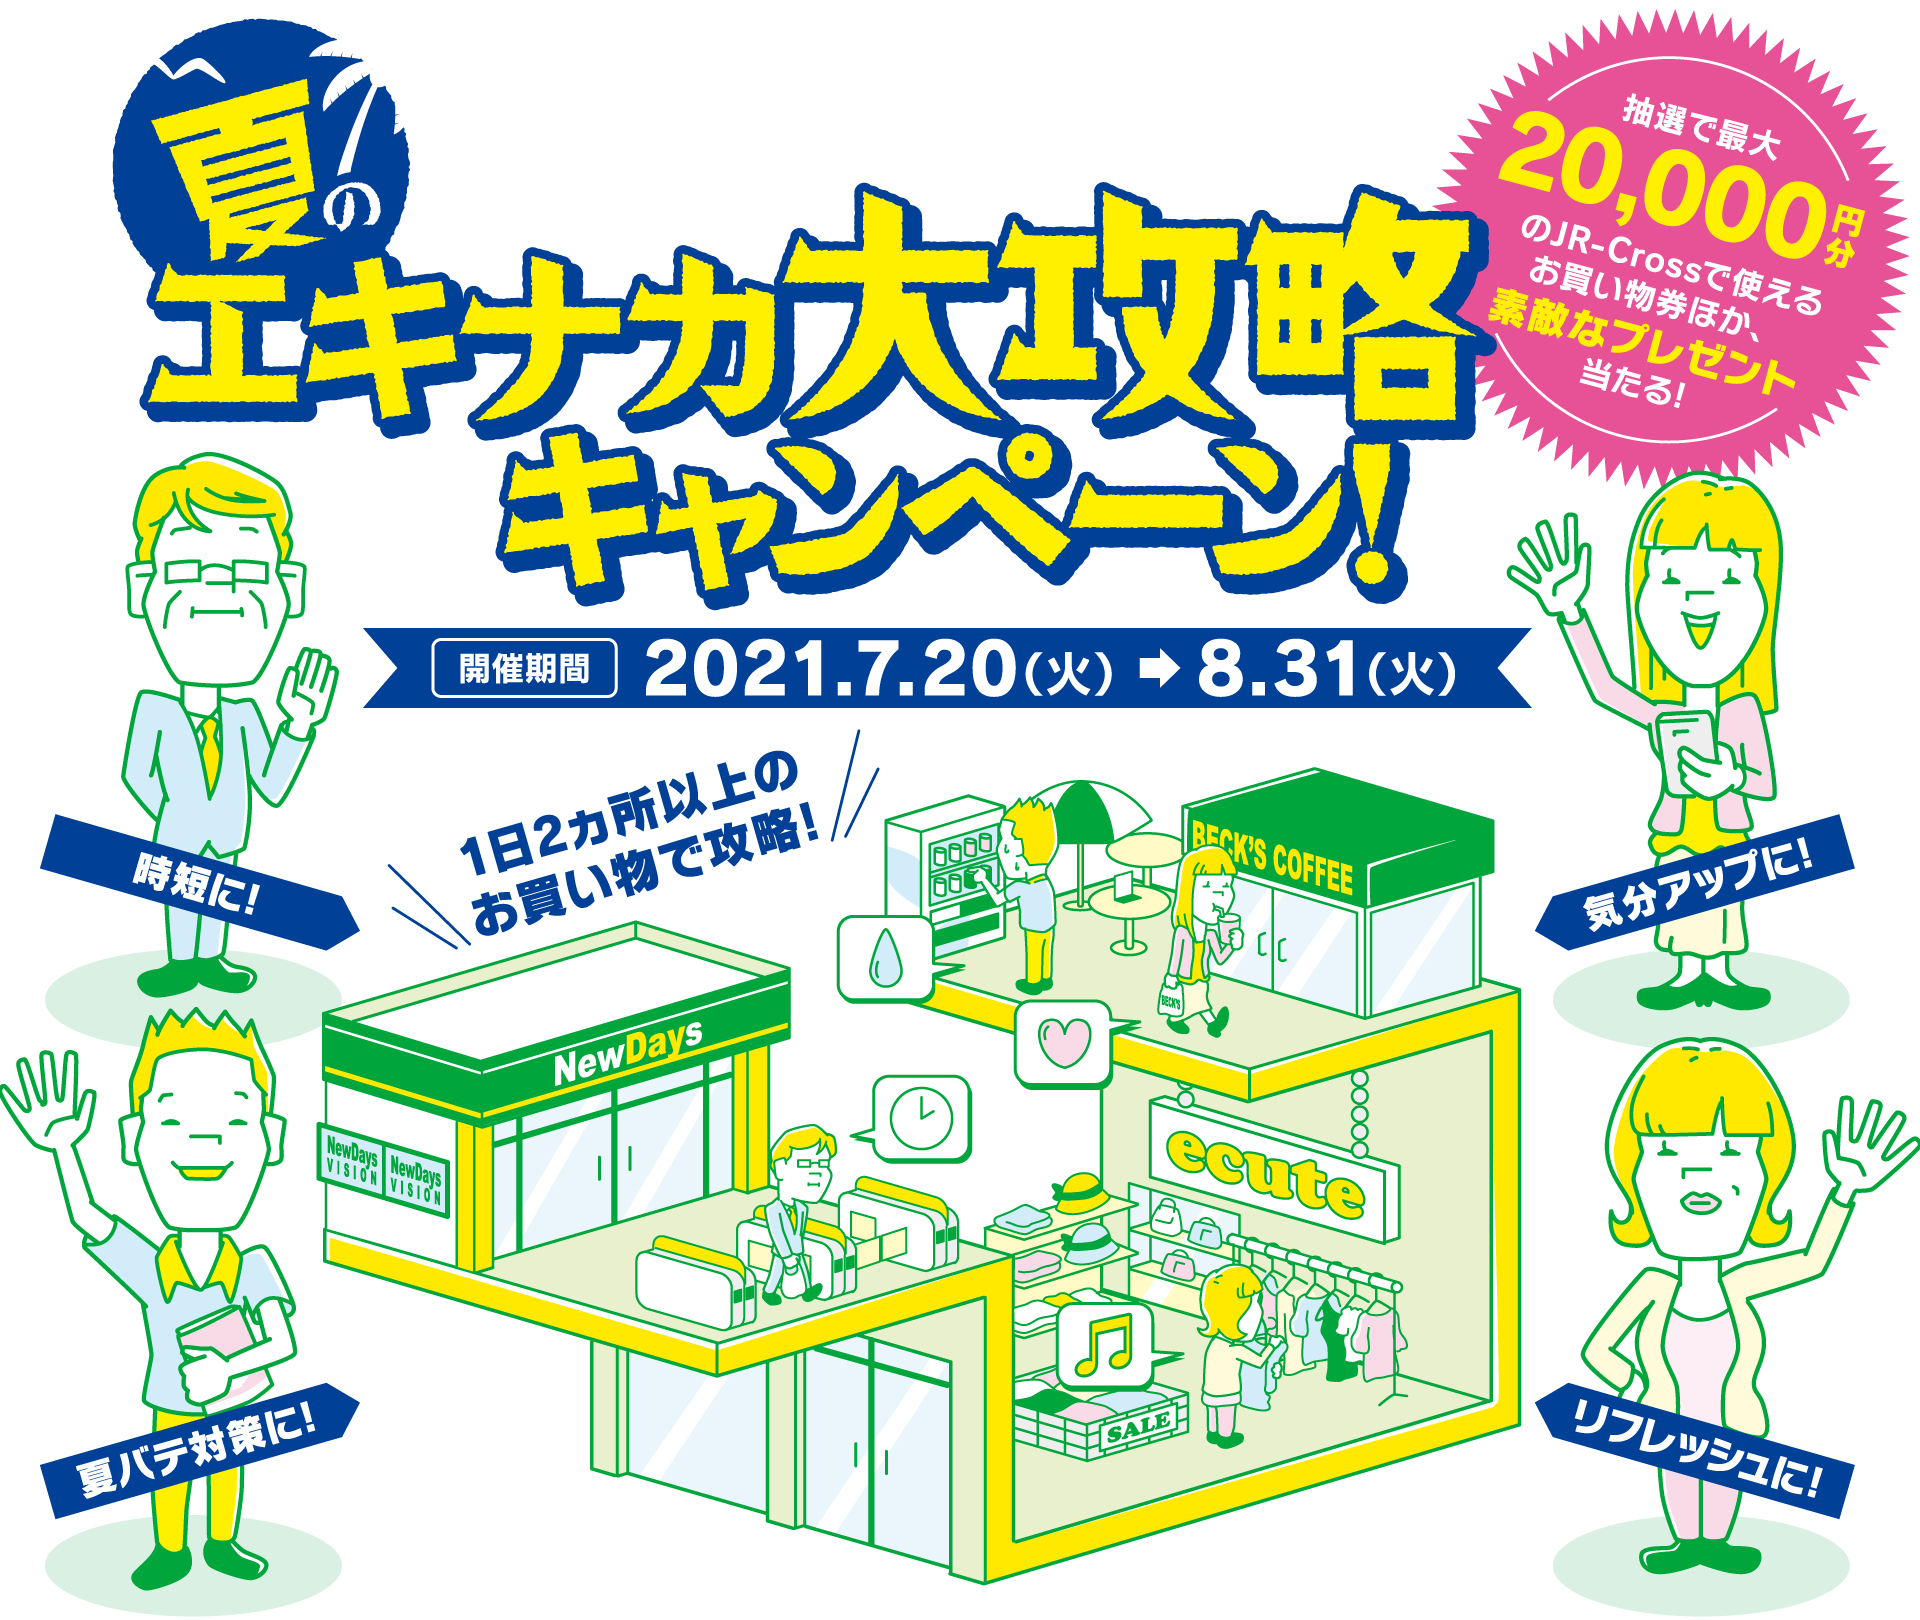 让我们掌握站EKINAKA！EKINAKA Great Strategy Campaign 您可以通过抽签在 JR-Cross 赢得价值高达 20,000 日元的购物，以及精美的礼物！举办期间 2021.7.20（星期二）→ 8.31（星期二）